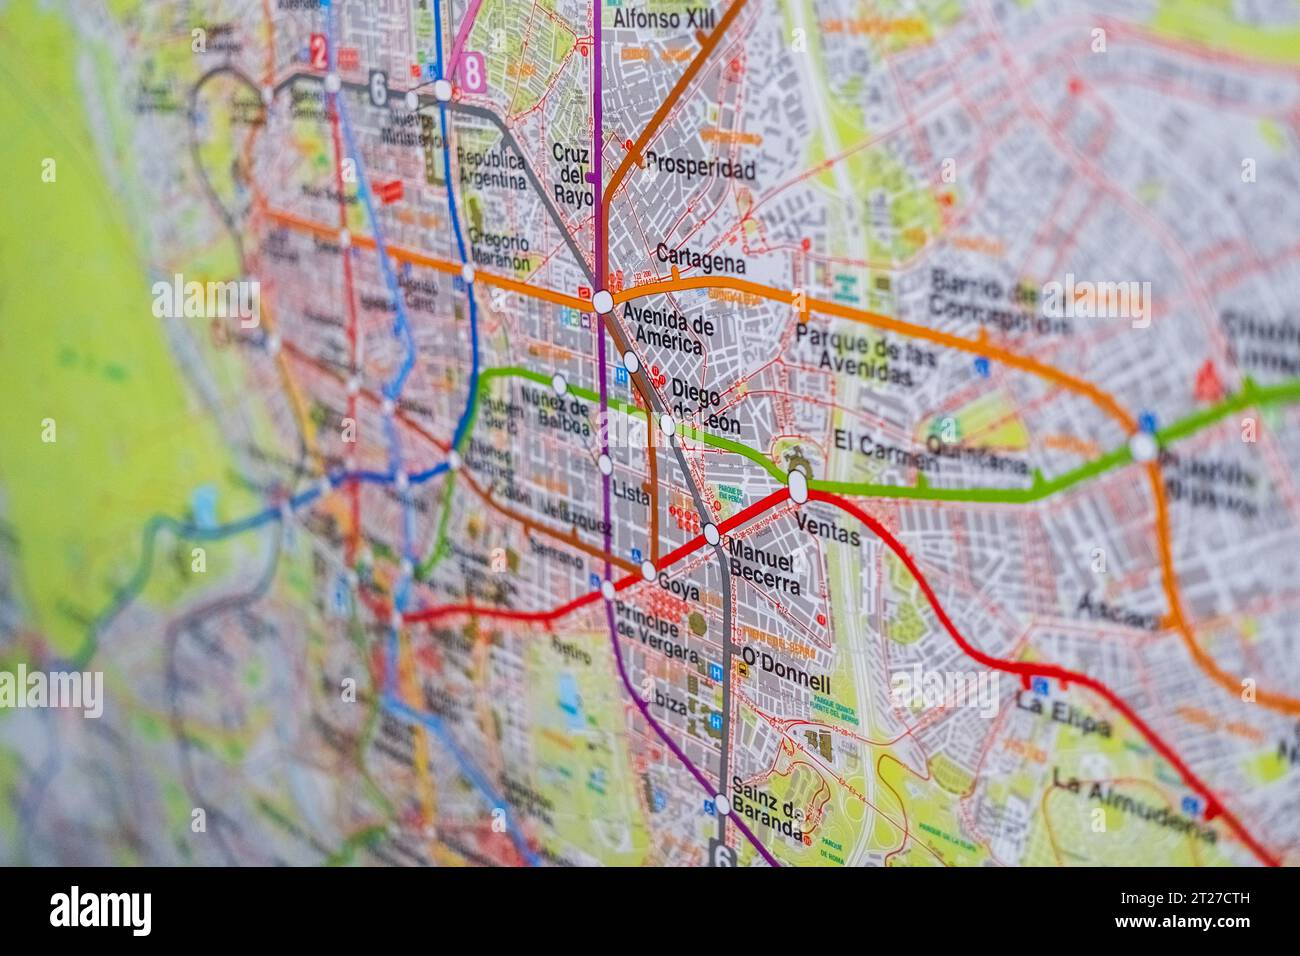 Madrid, Spagna - 10 ottobre 23: Dettaglio di una mappa della città di Madrid. Foto Stock